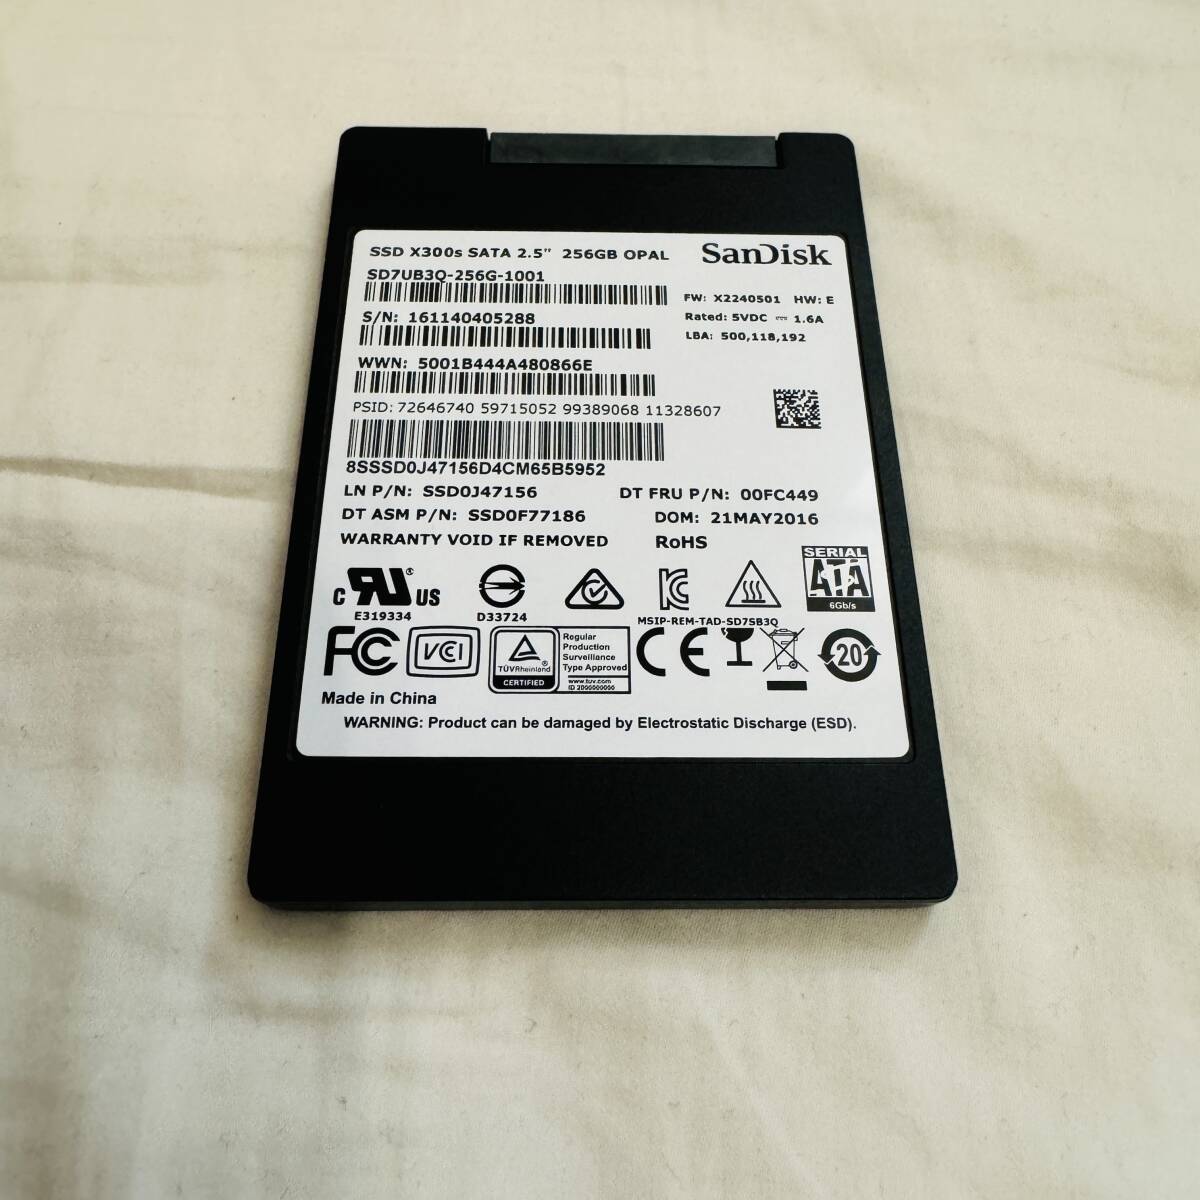 SanDisk サンディスク X300 SSD 2.5inch SATA 6Gb/s 256GB SD7UB3Q-256G-1001 使用時間 744時間の画像1